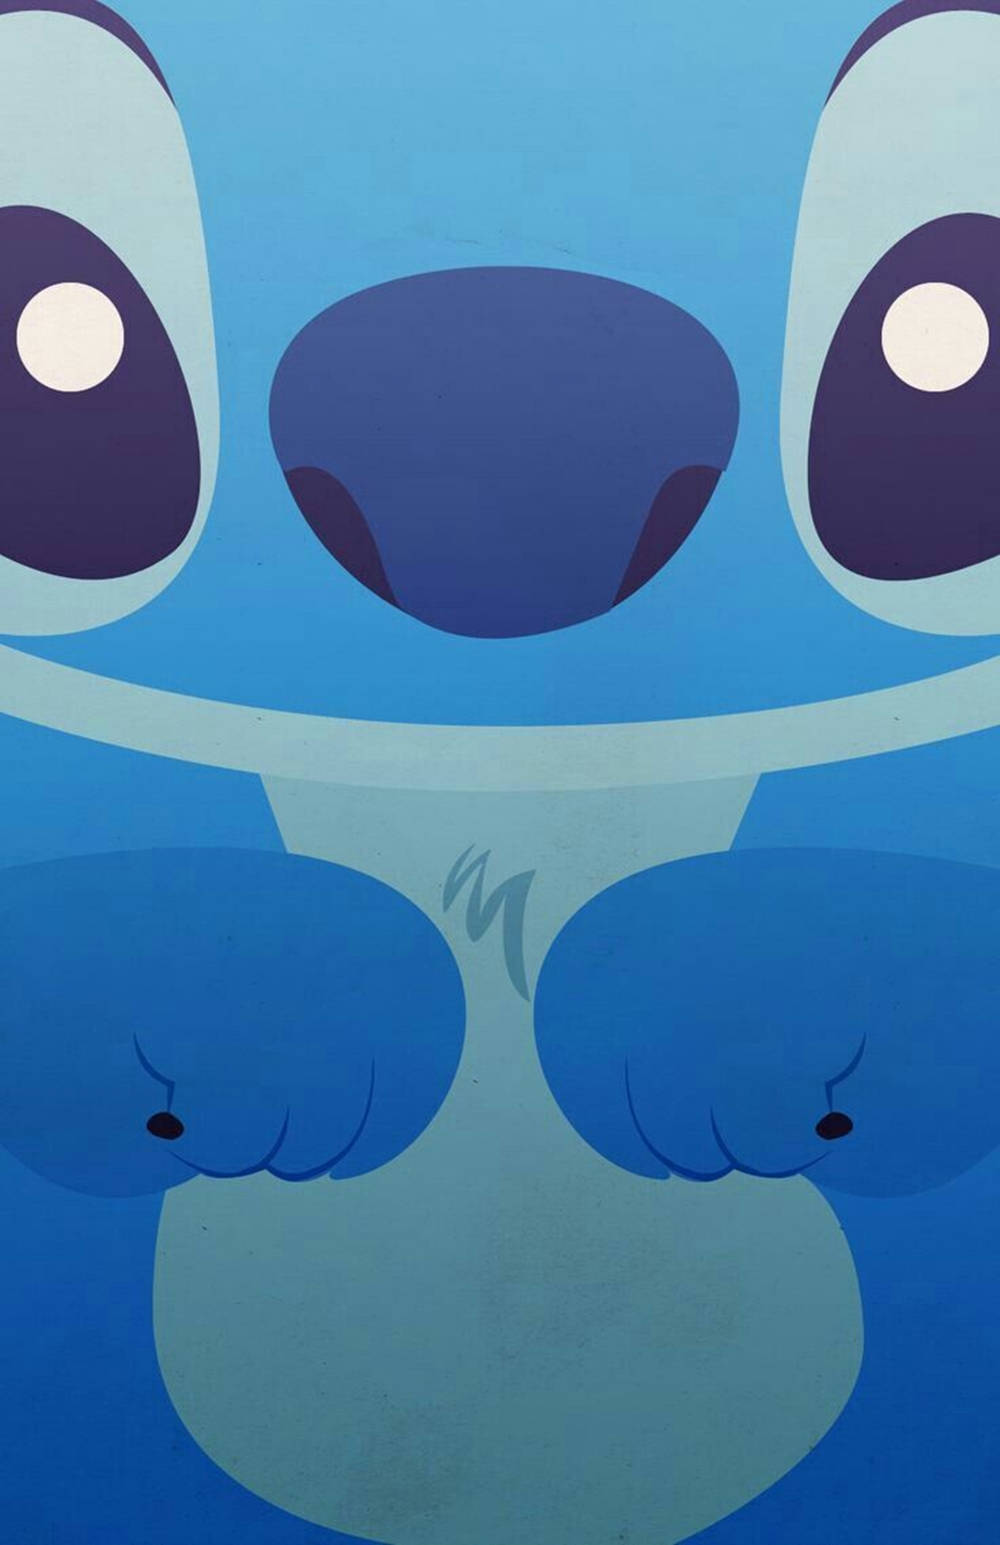 Cute Close Up Stitch IPhone Wallpaper